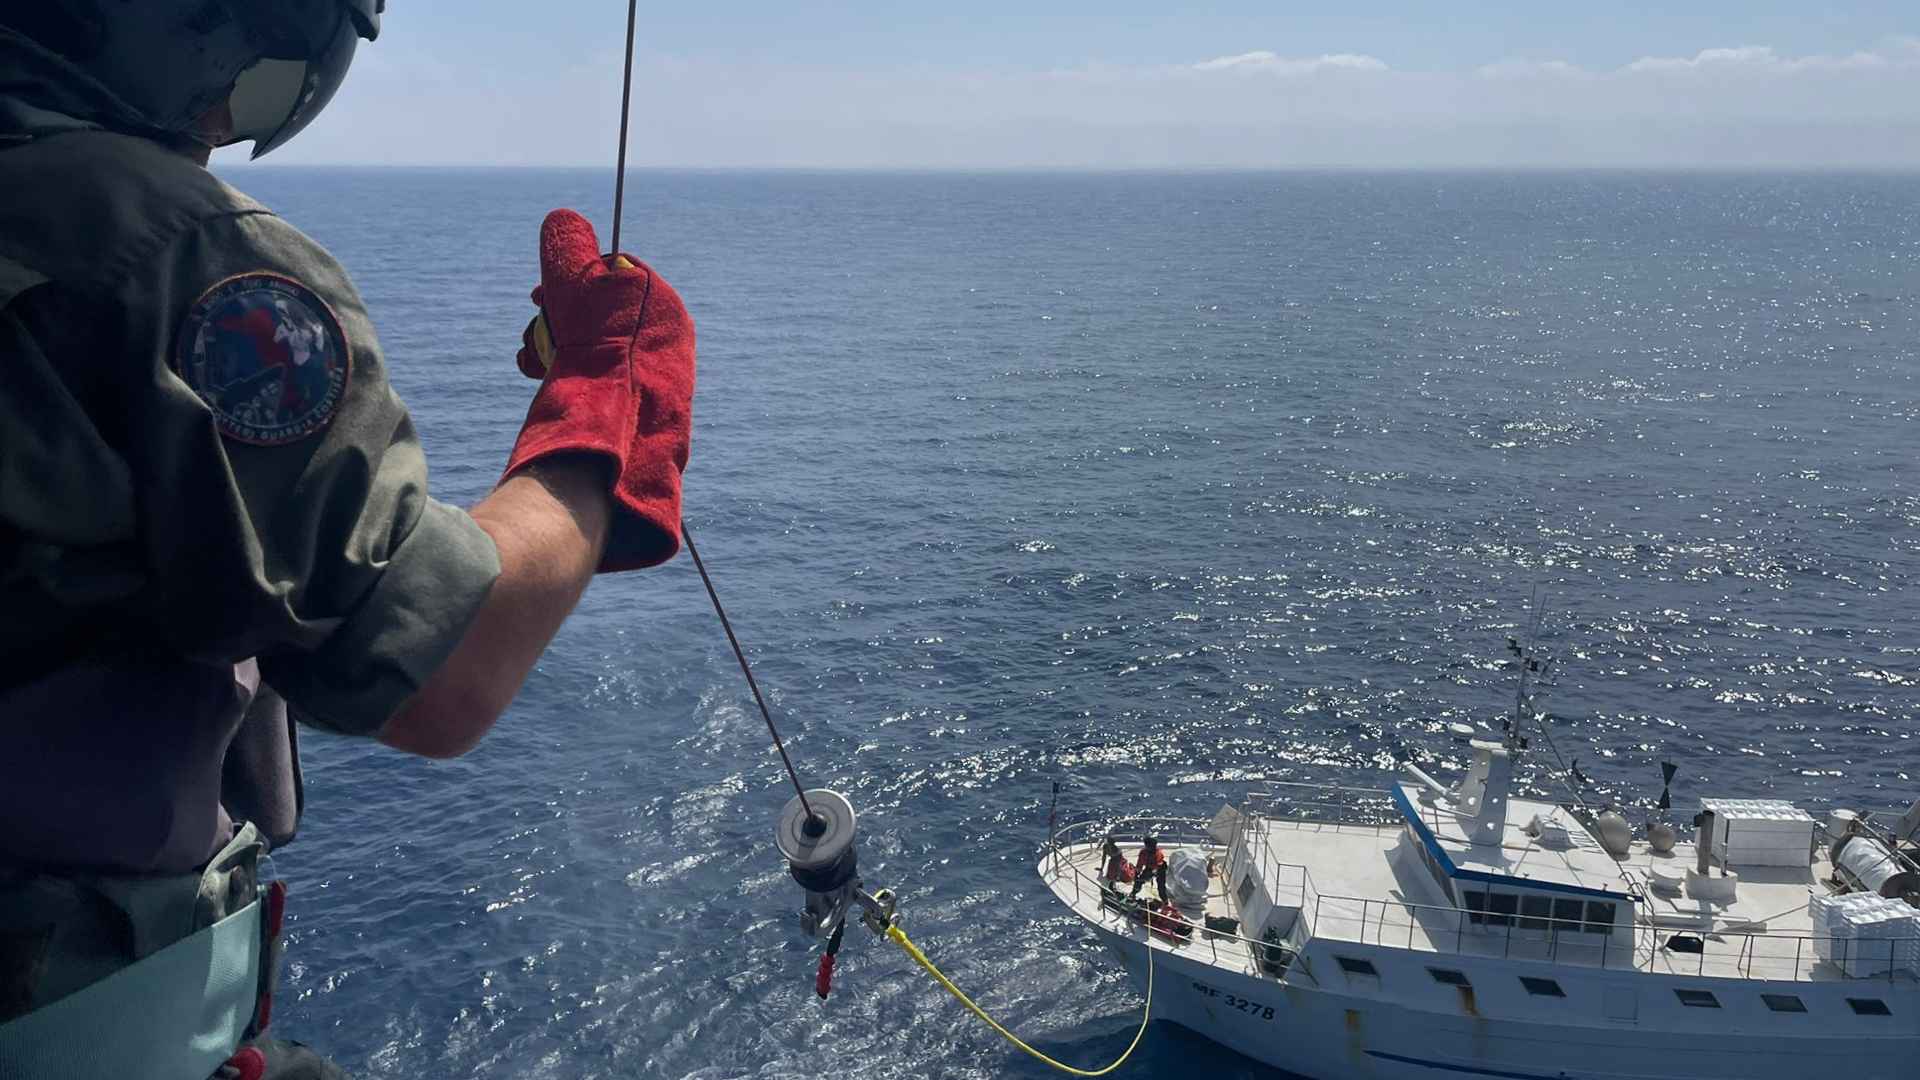 guardia costiera soccorso in mare acque internazionali malore pescatore 100 miglia pescara